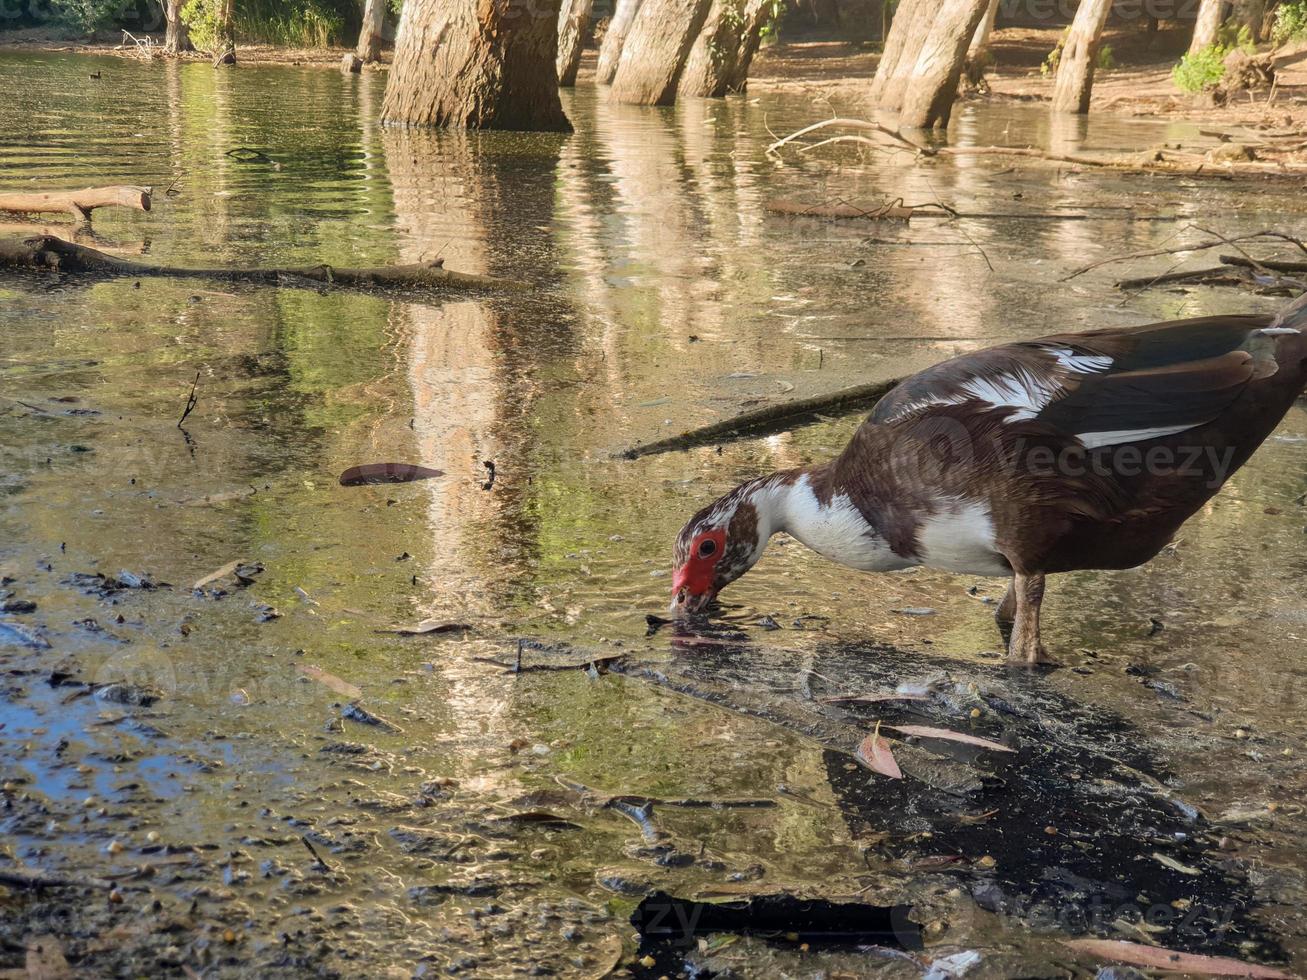 El pato se alimenta en el lago athalassa contra hermosos reflejos de corteza de árbol foto